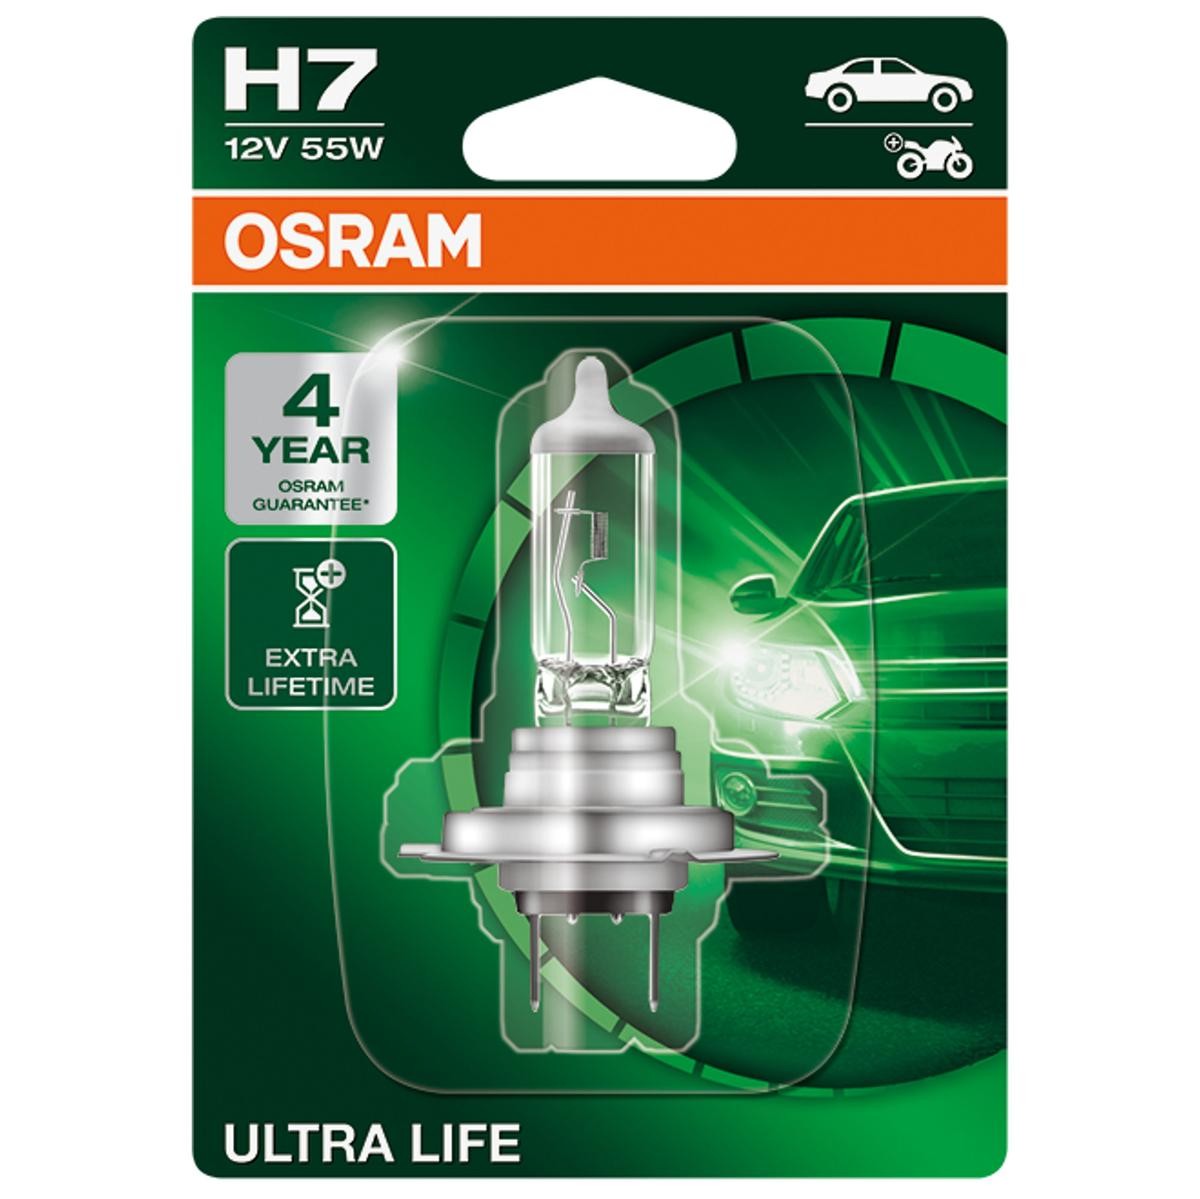 OSRAM ULTRA LIFE 64210ULT-01B Bulb, spotlight H7 12V 55W PX26d, 3200K, Halogen